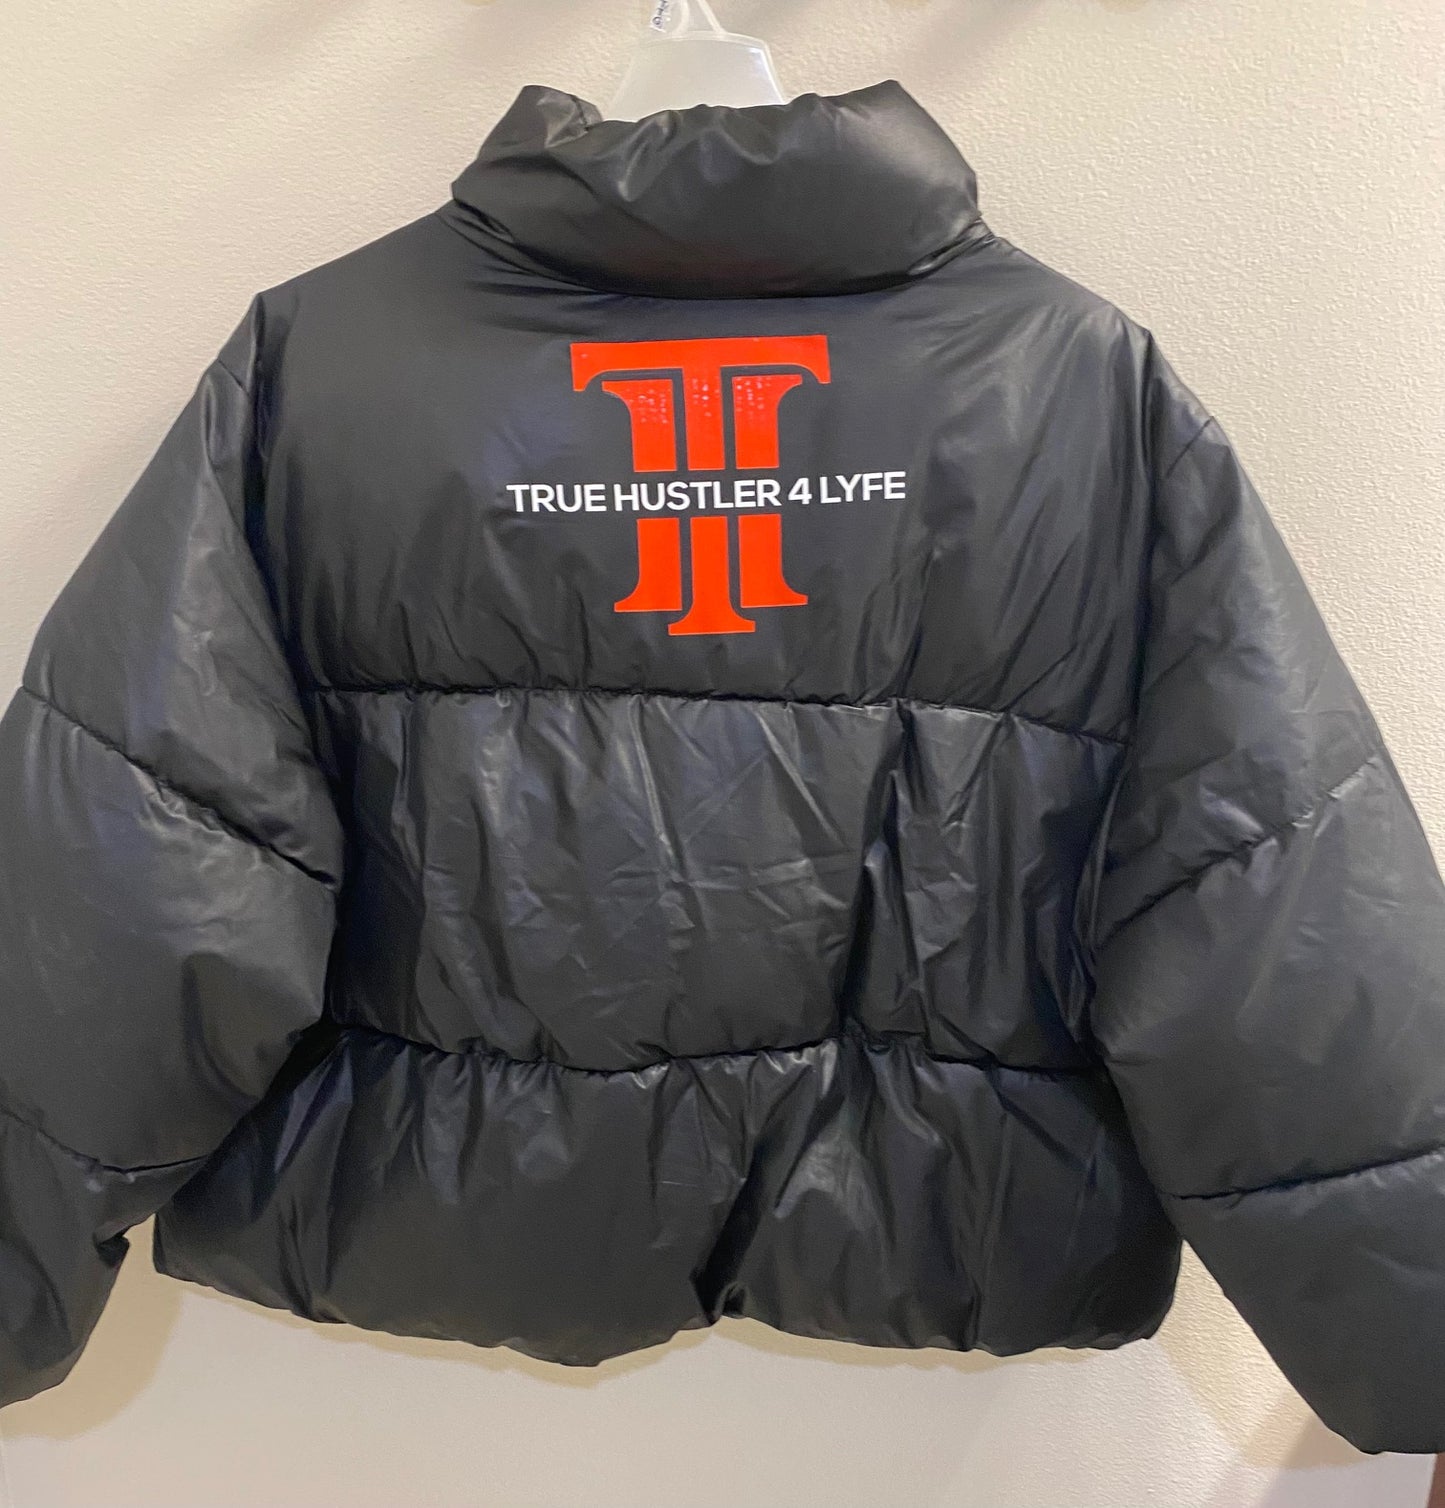 "True Hustler 4 Lyfe: Elite Cropped Puffer Jacket for Women"